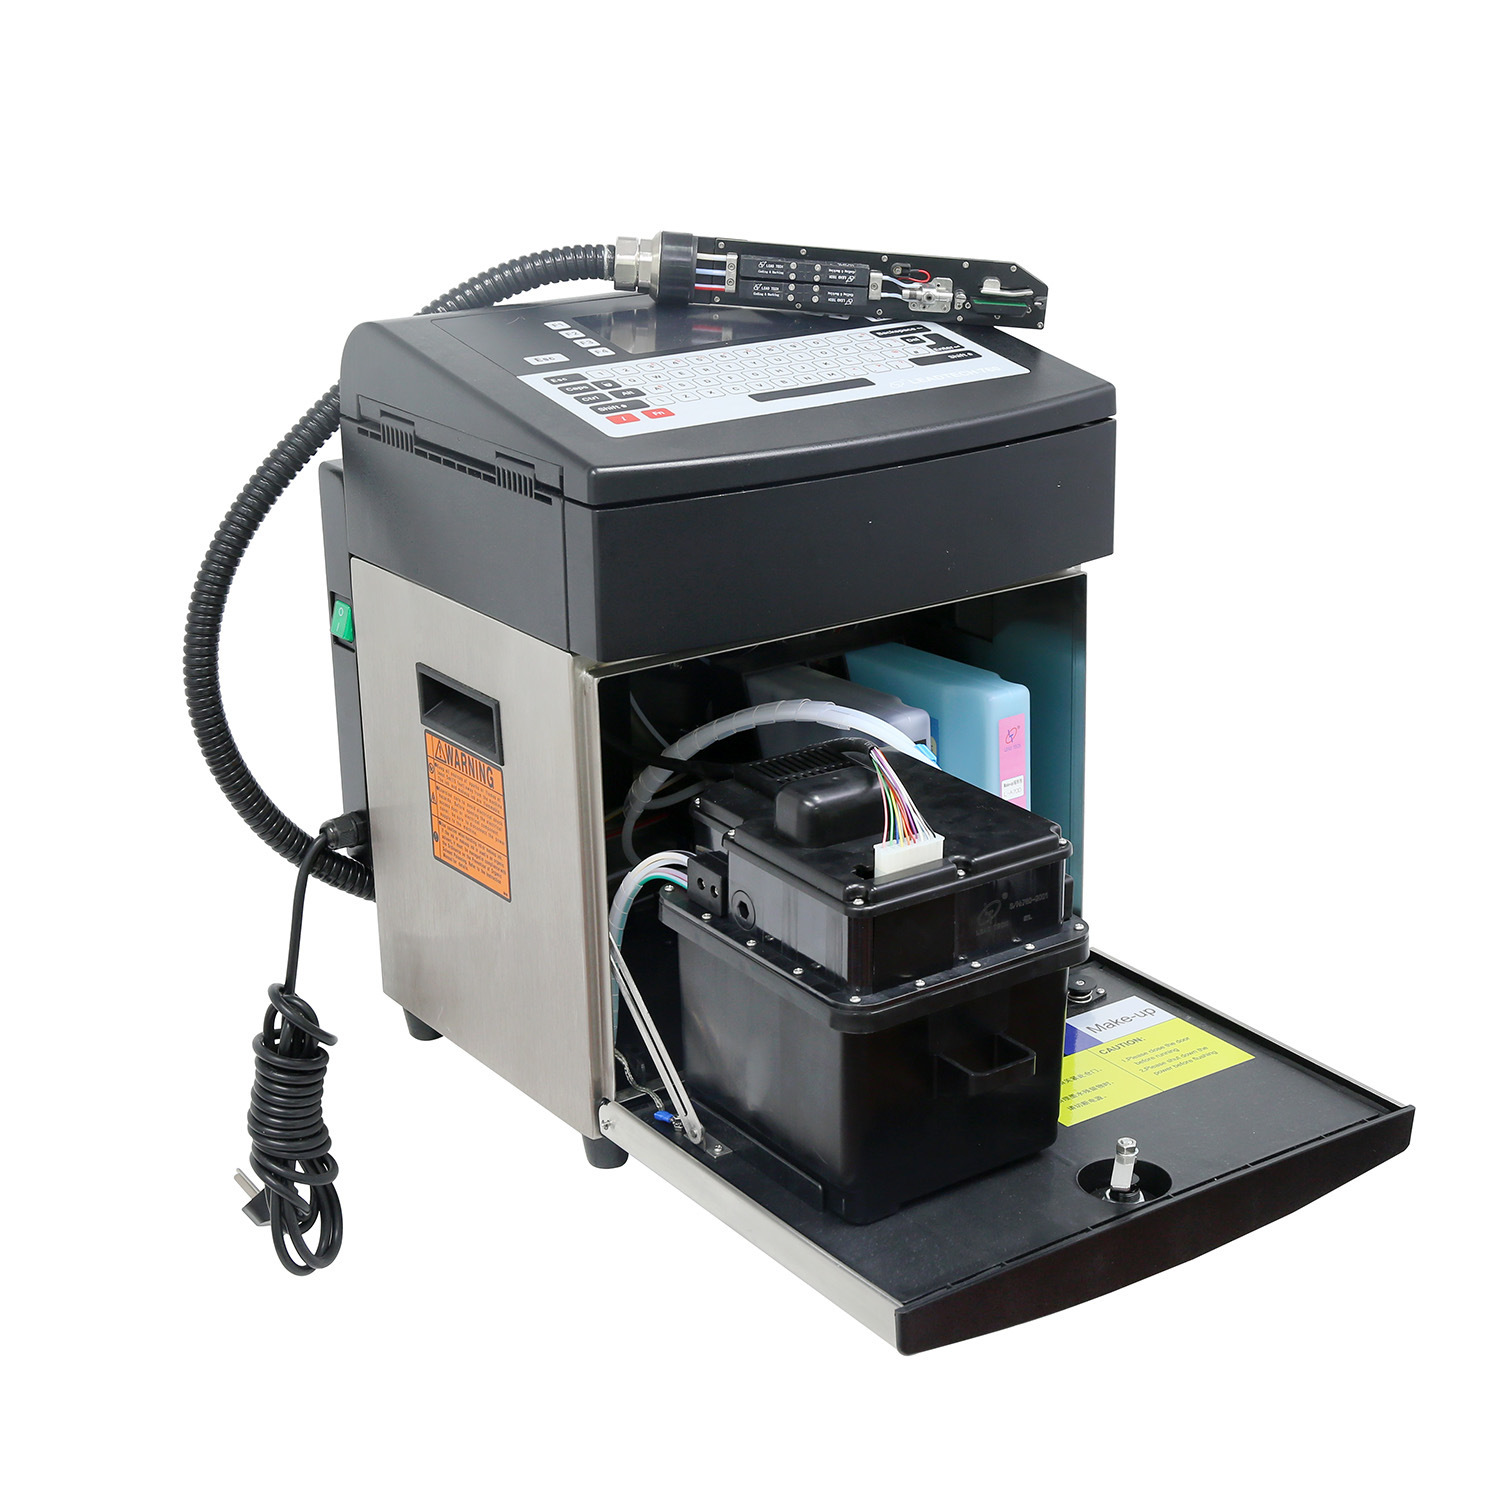 Leadtech Lt760 Inkjet Printer for Printing